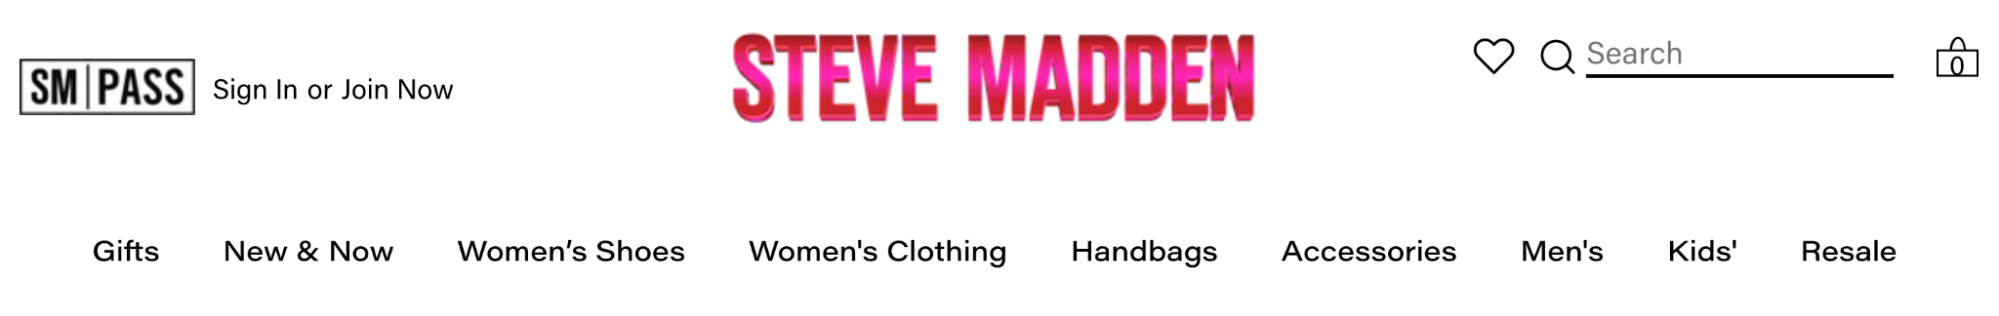 Steve Madden website navigation